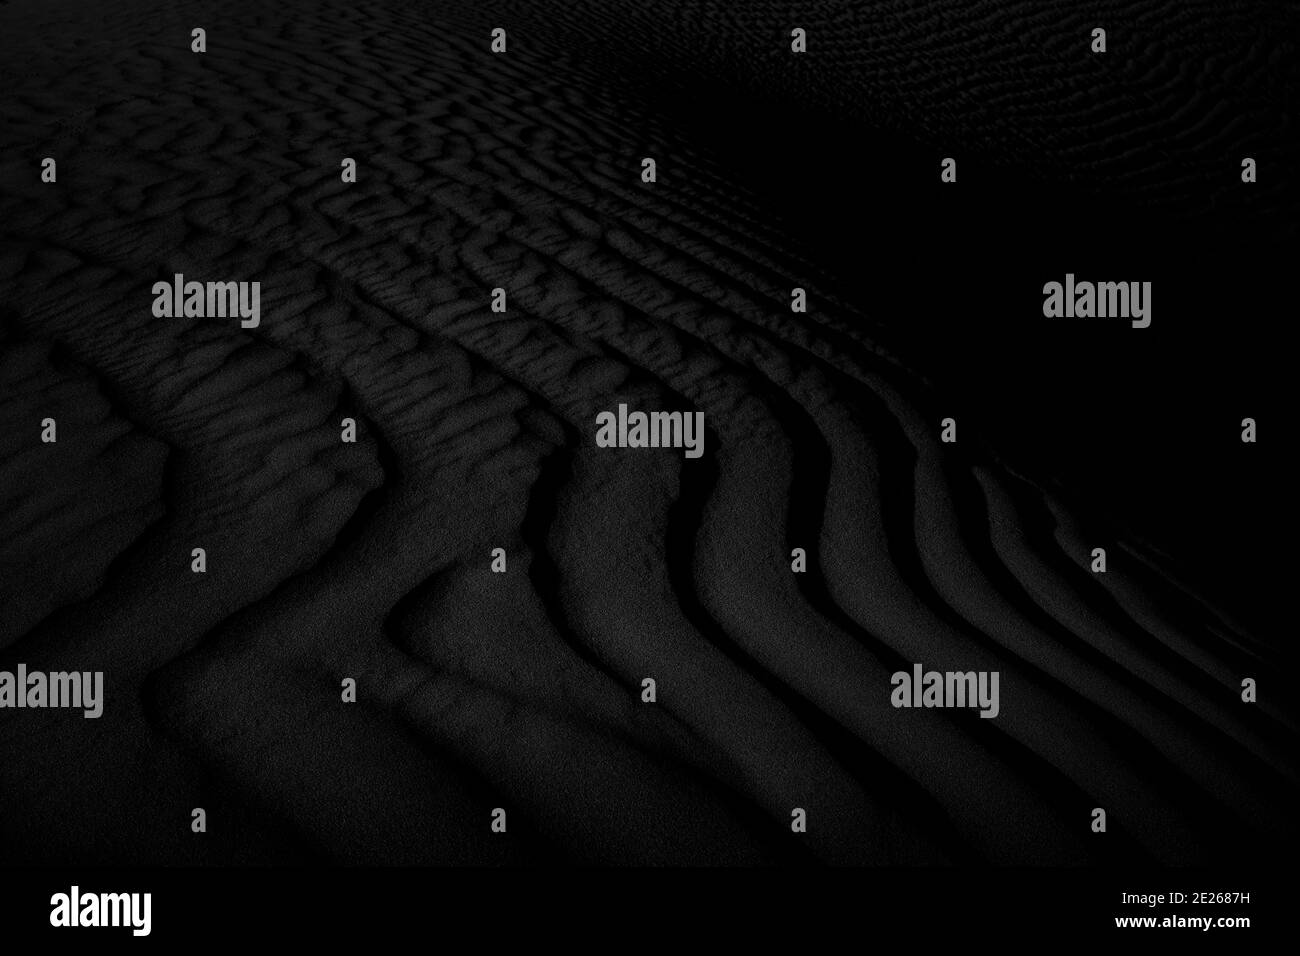 Black and white dark texture of desert sand dunes Stock Photo